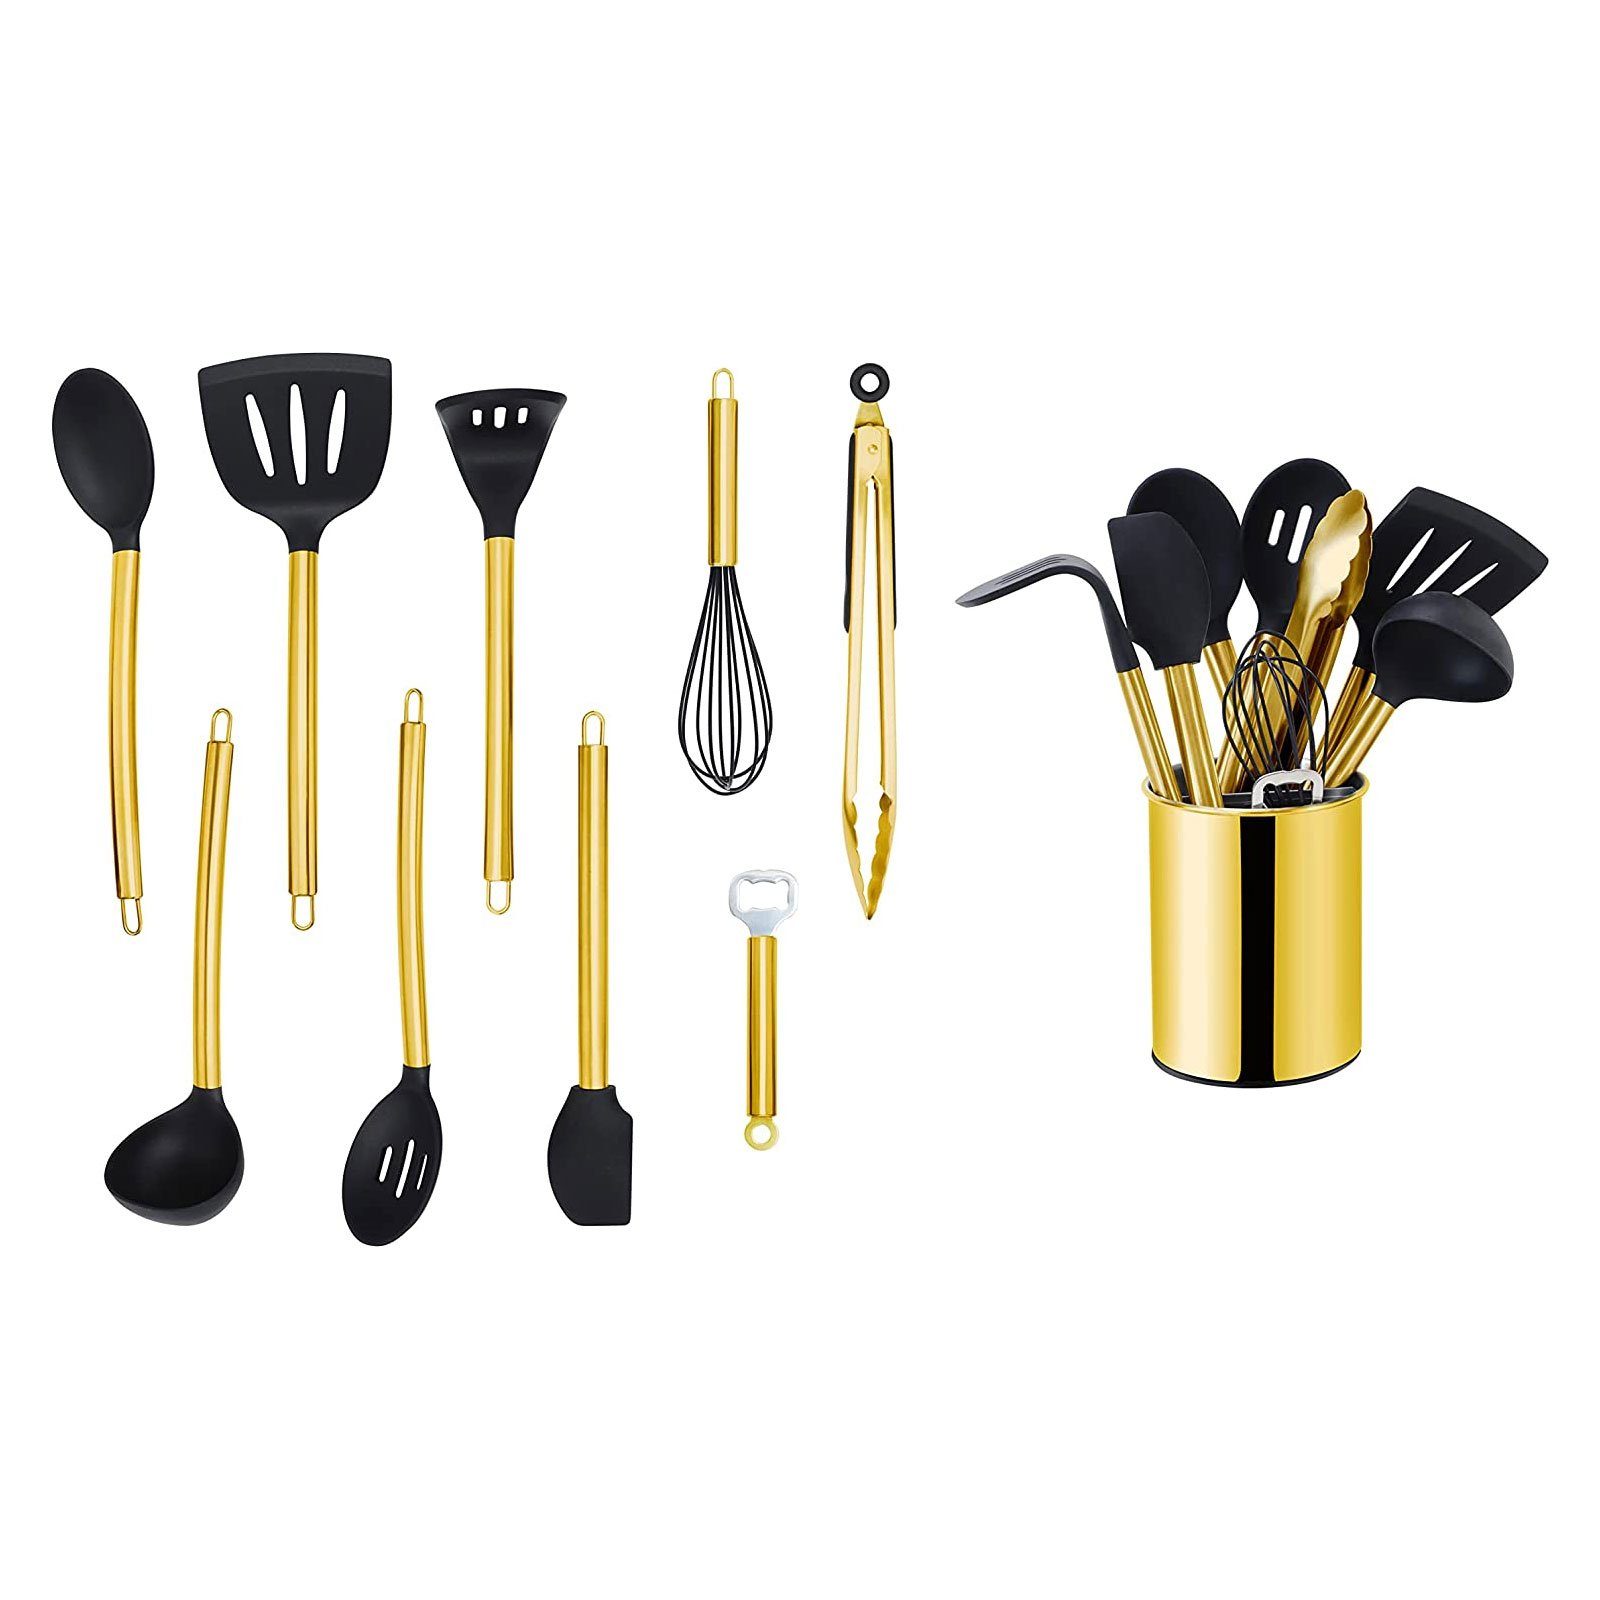 ECHTWERK Küchenorganizer-Set, Kochbesteck mit Edelstahlgriff, Kochset mit Gold Utensilienhalter